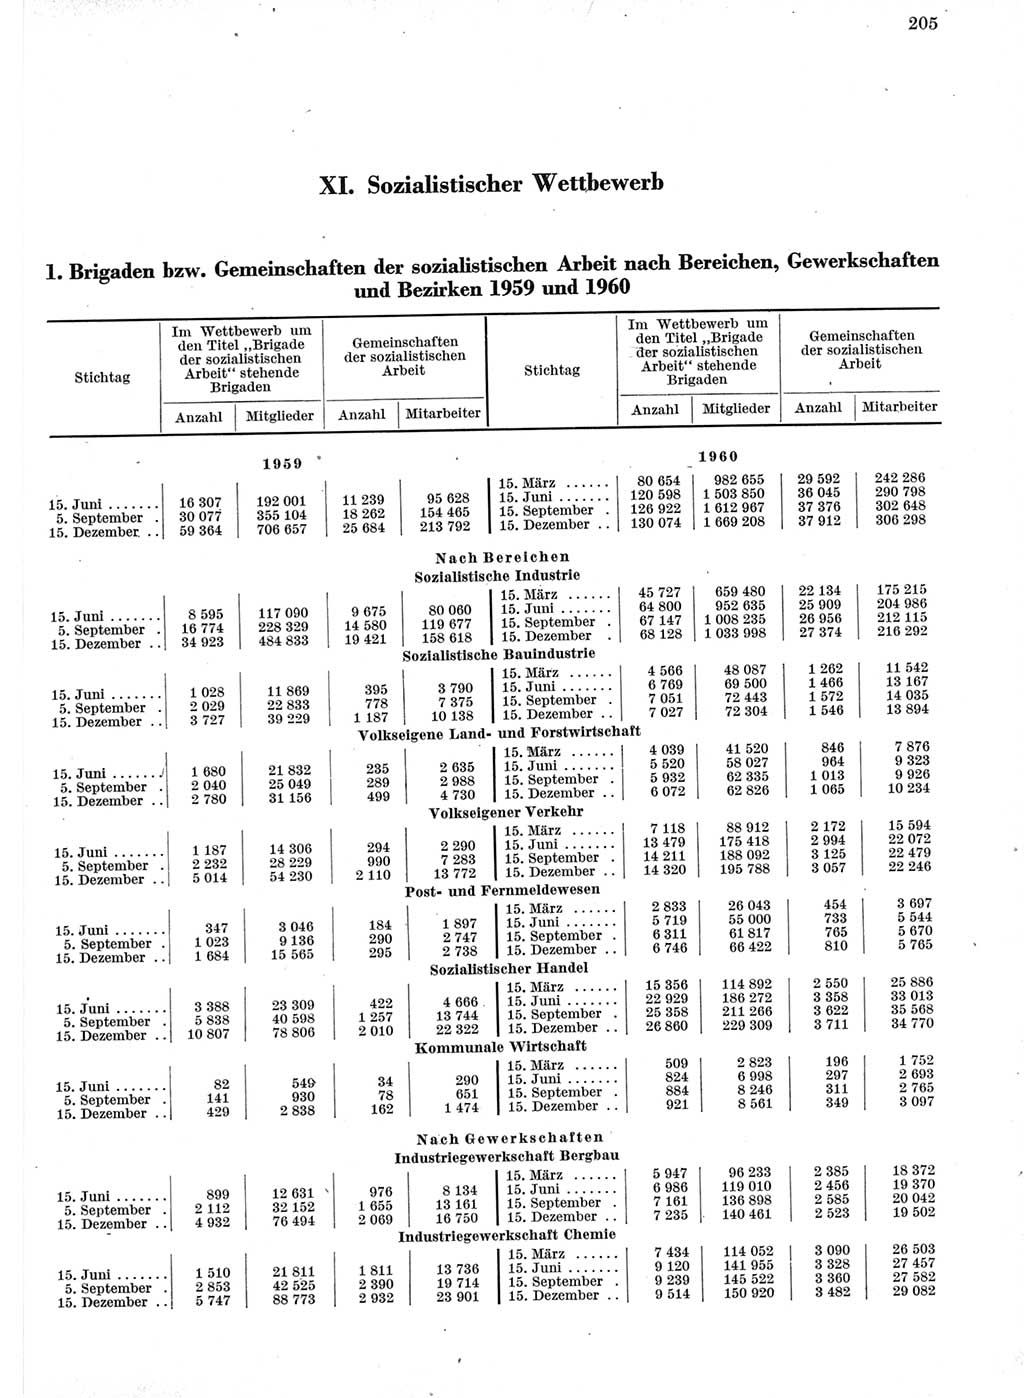 Statistisches Jahrbuch der Deutschen Demokratischen Republik (DDR) 1960-1961, Seite 205 (Stat. Jb. DDR 1960-1961, S. 205)